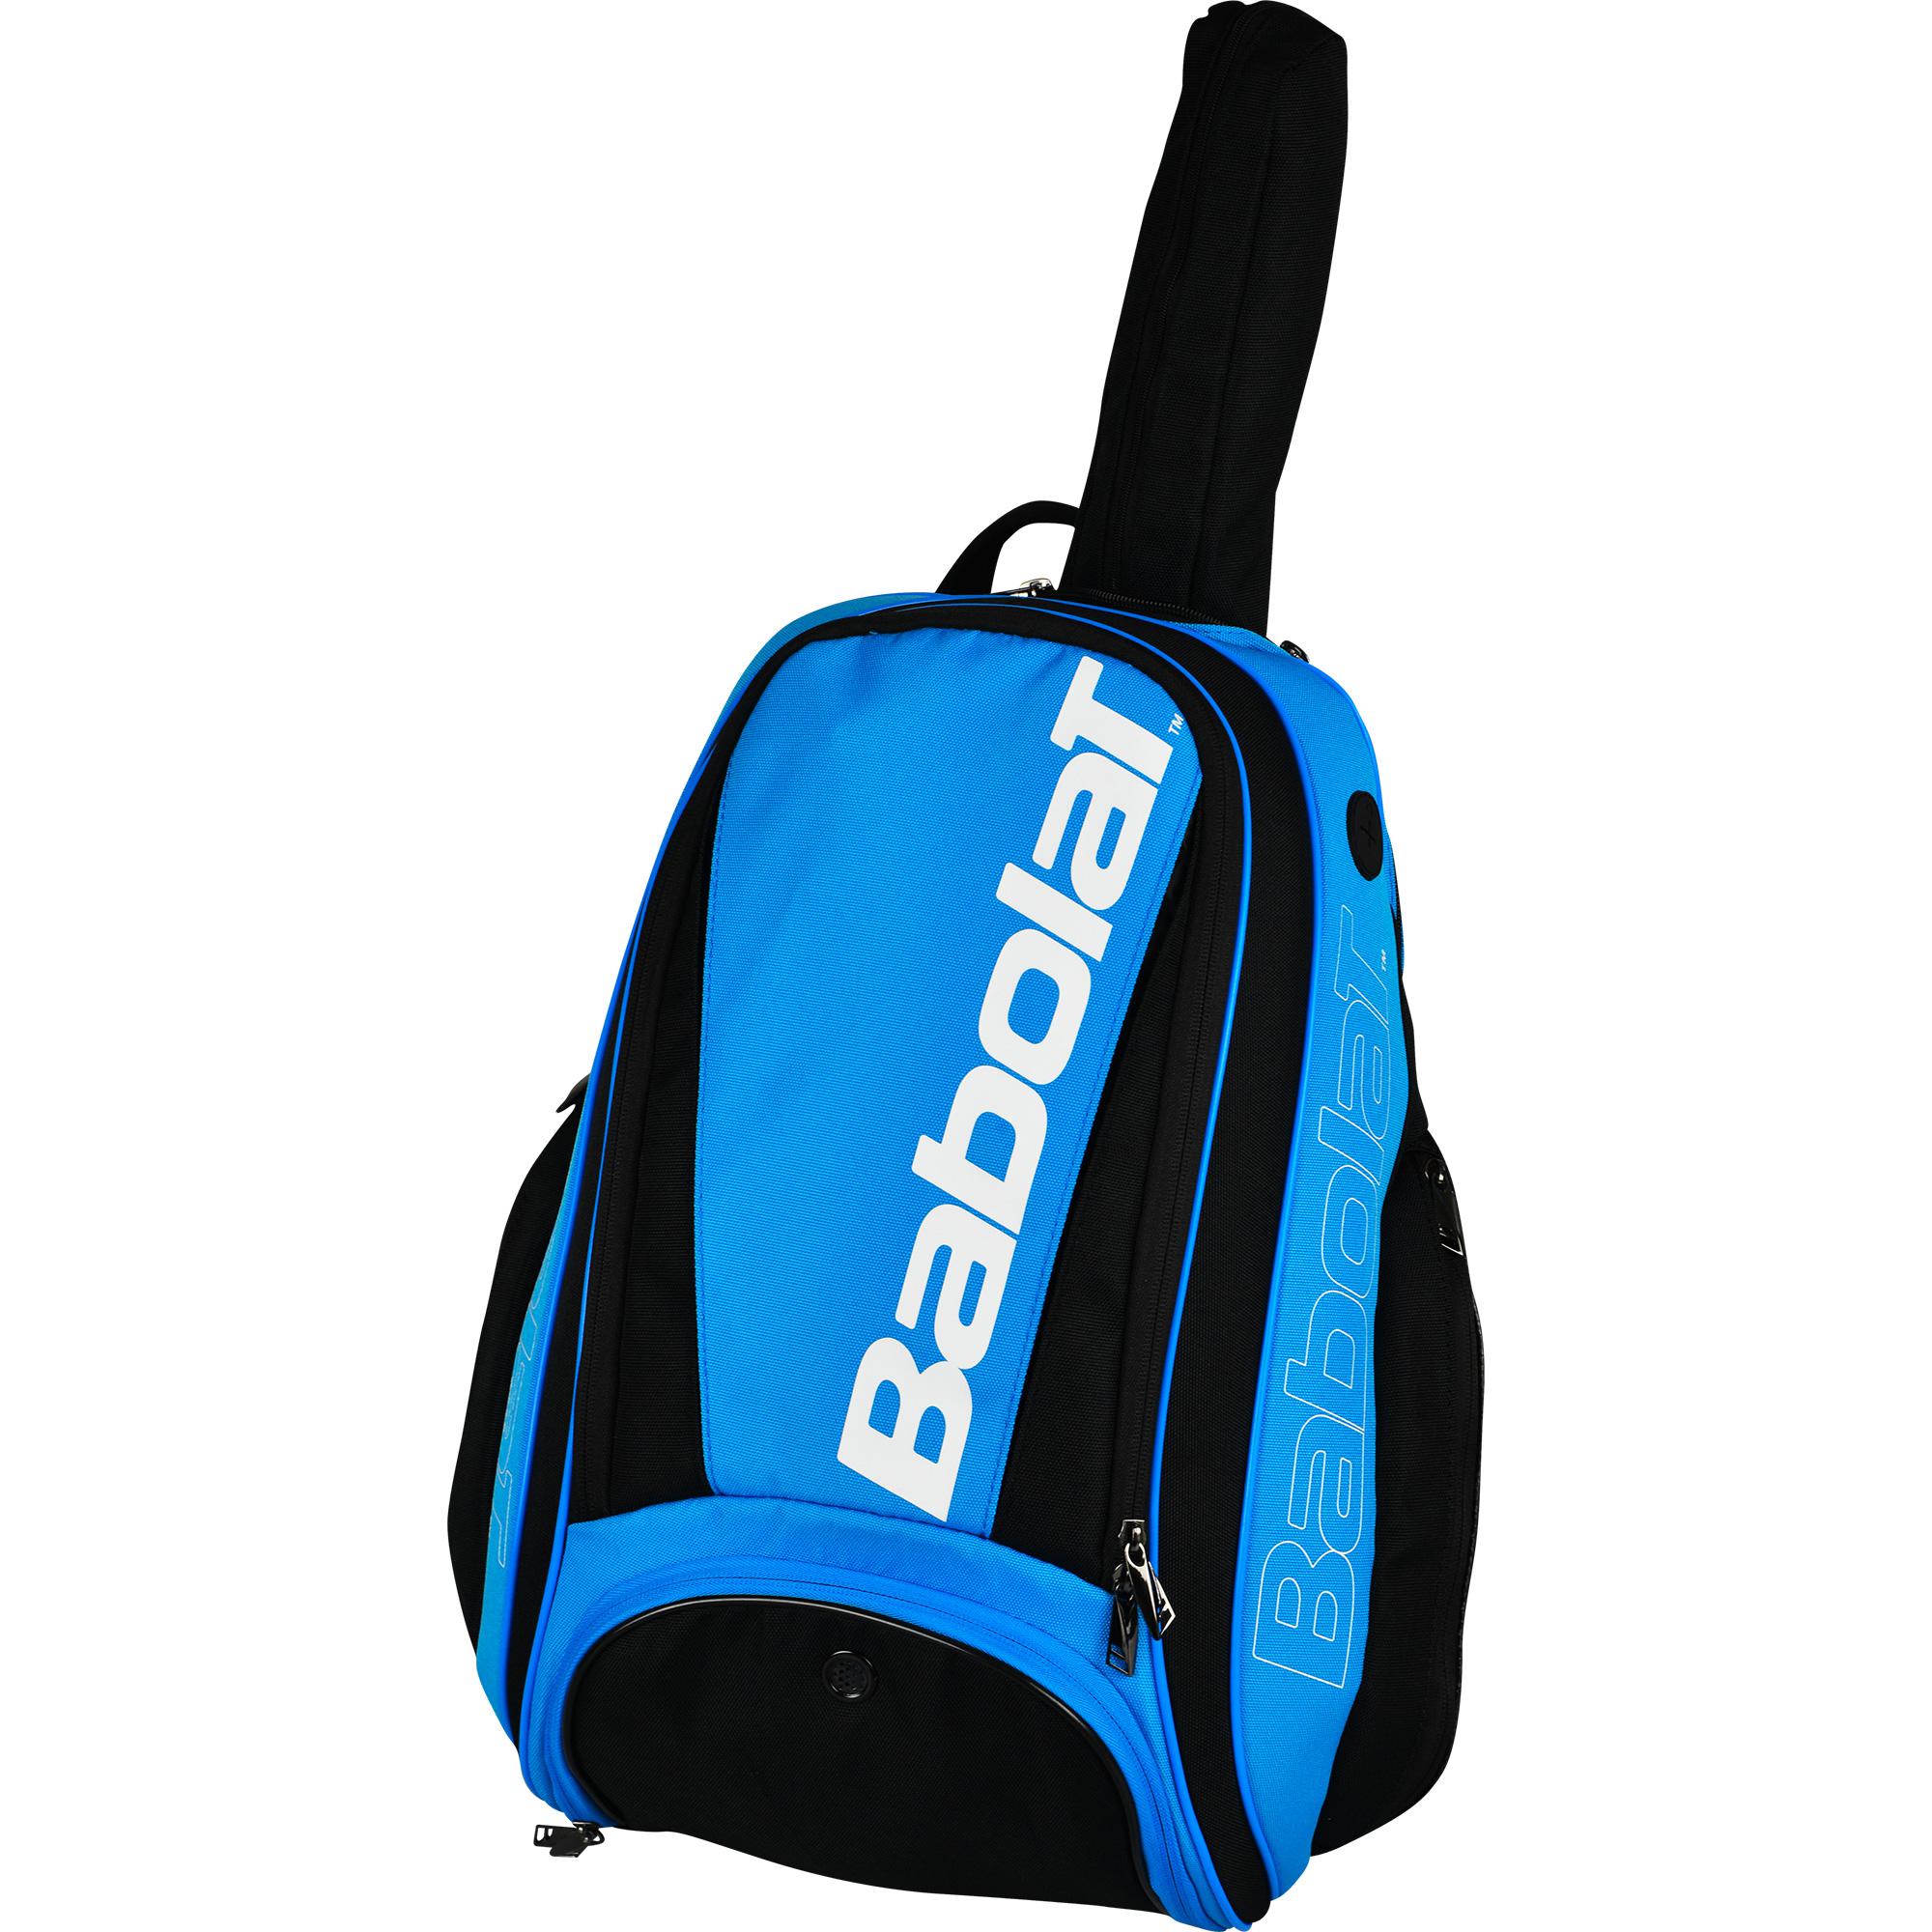 Babolat Pure Drive Backpack - Blue/Black - Tennisnuts.com